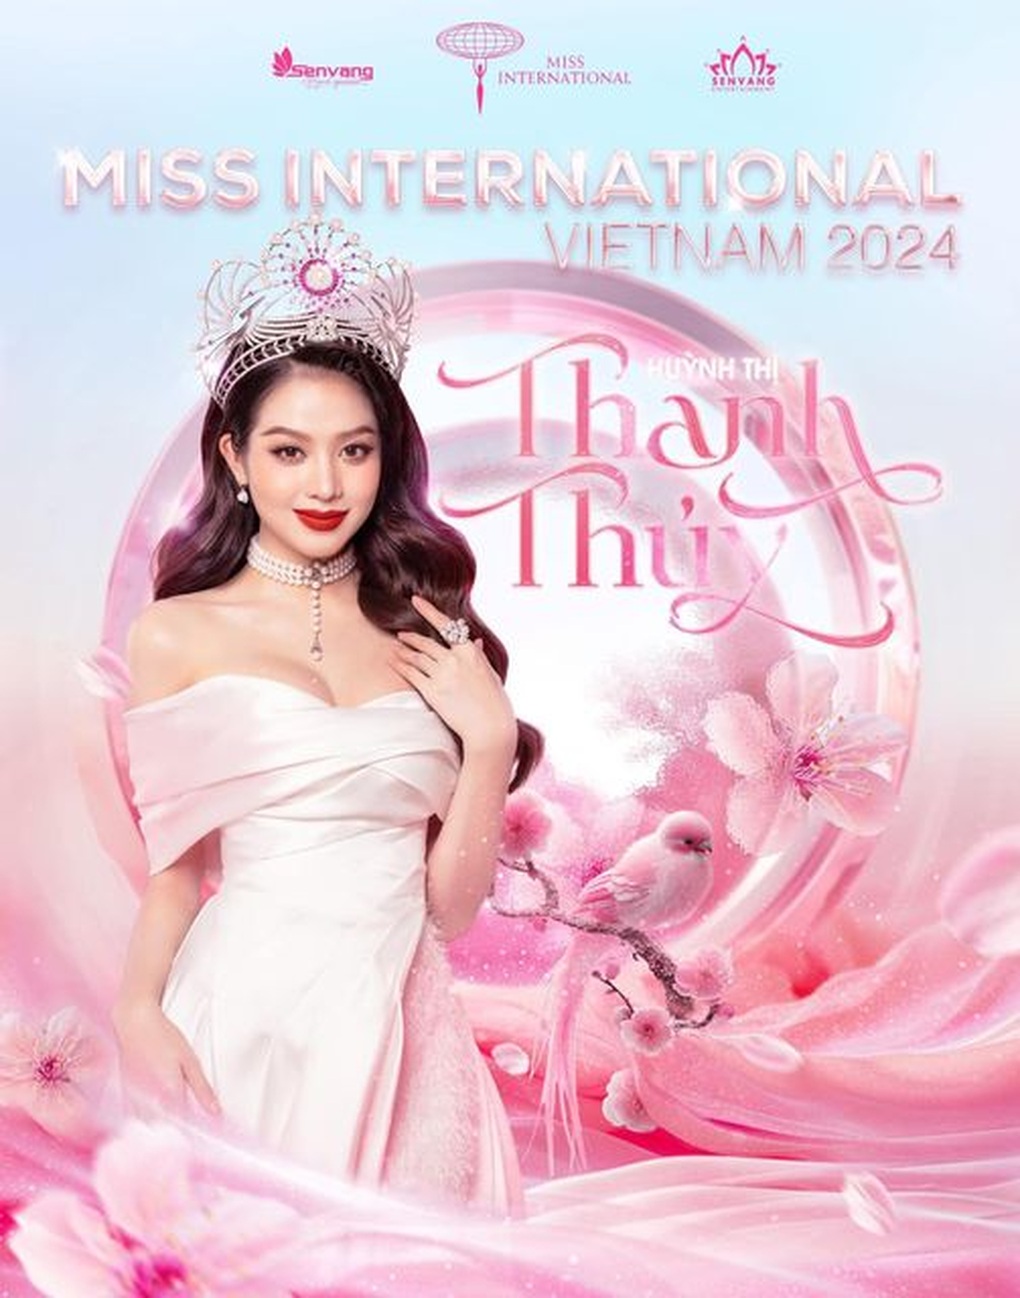 Hình ảnh Hoa hậu Thanh Thủy trên trang chủ Hoa hậu Quốc tế gây chú ý - Ảnh 1.